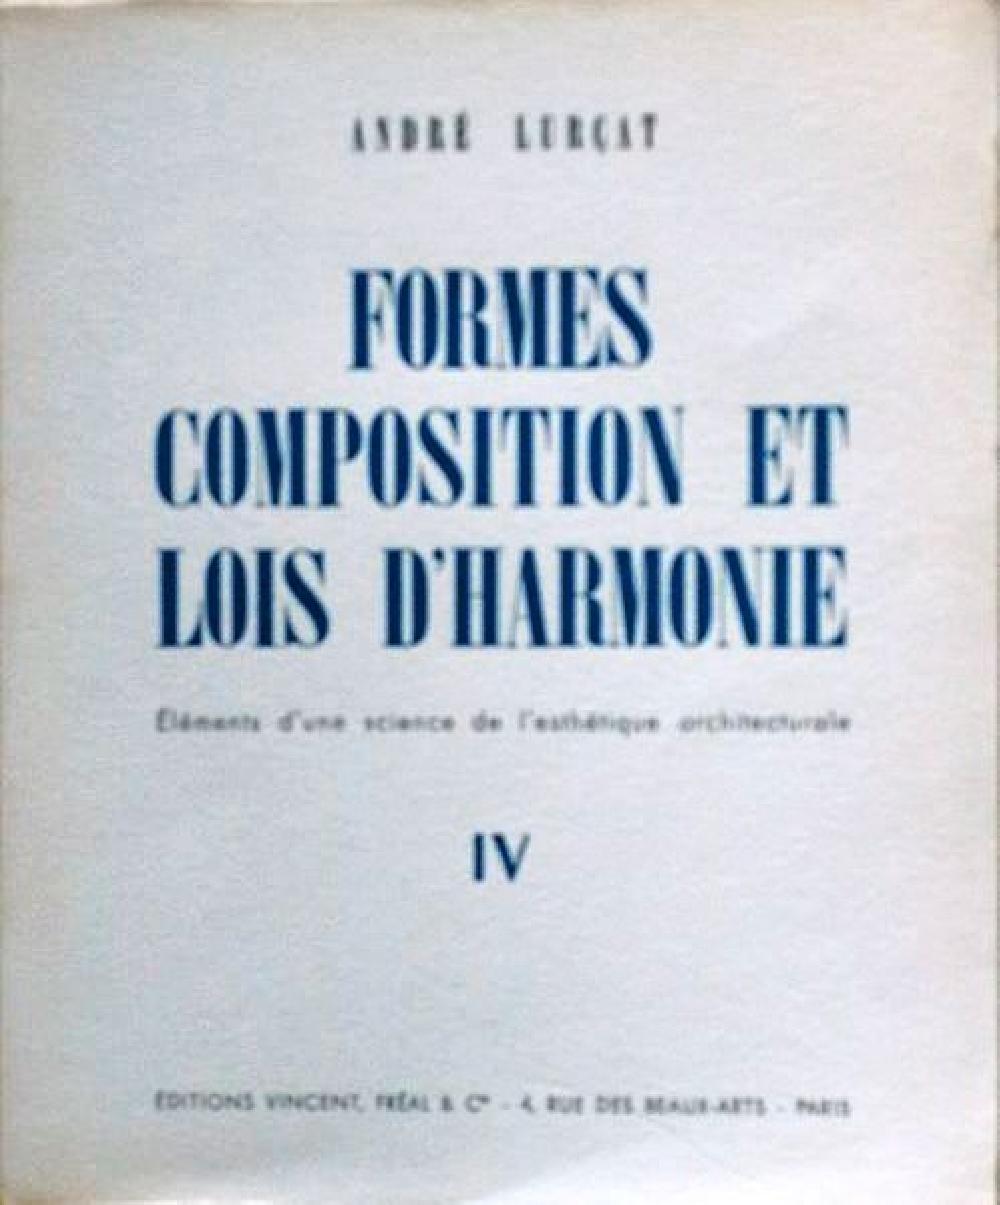 Formes composition et lois d'harmonie 